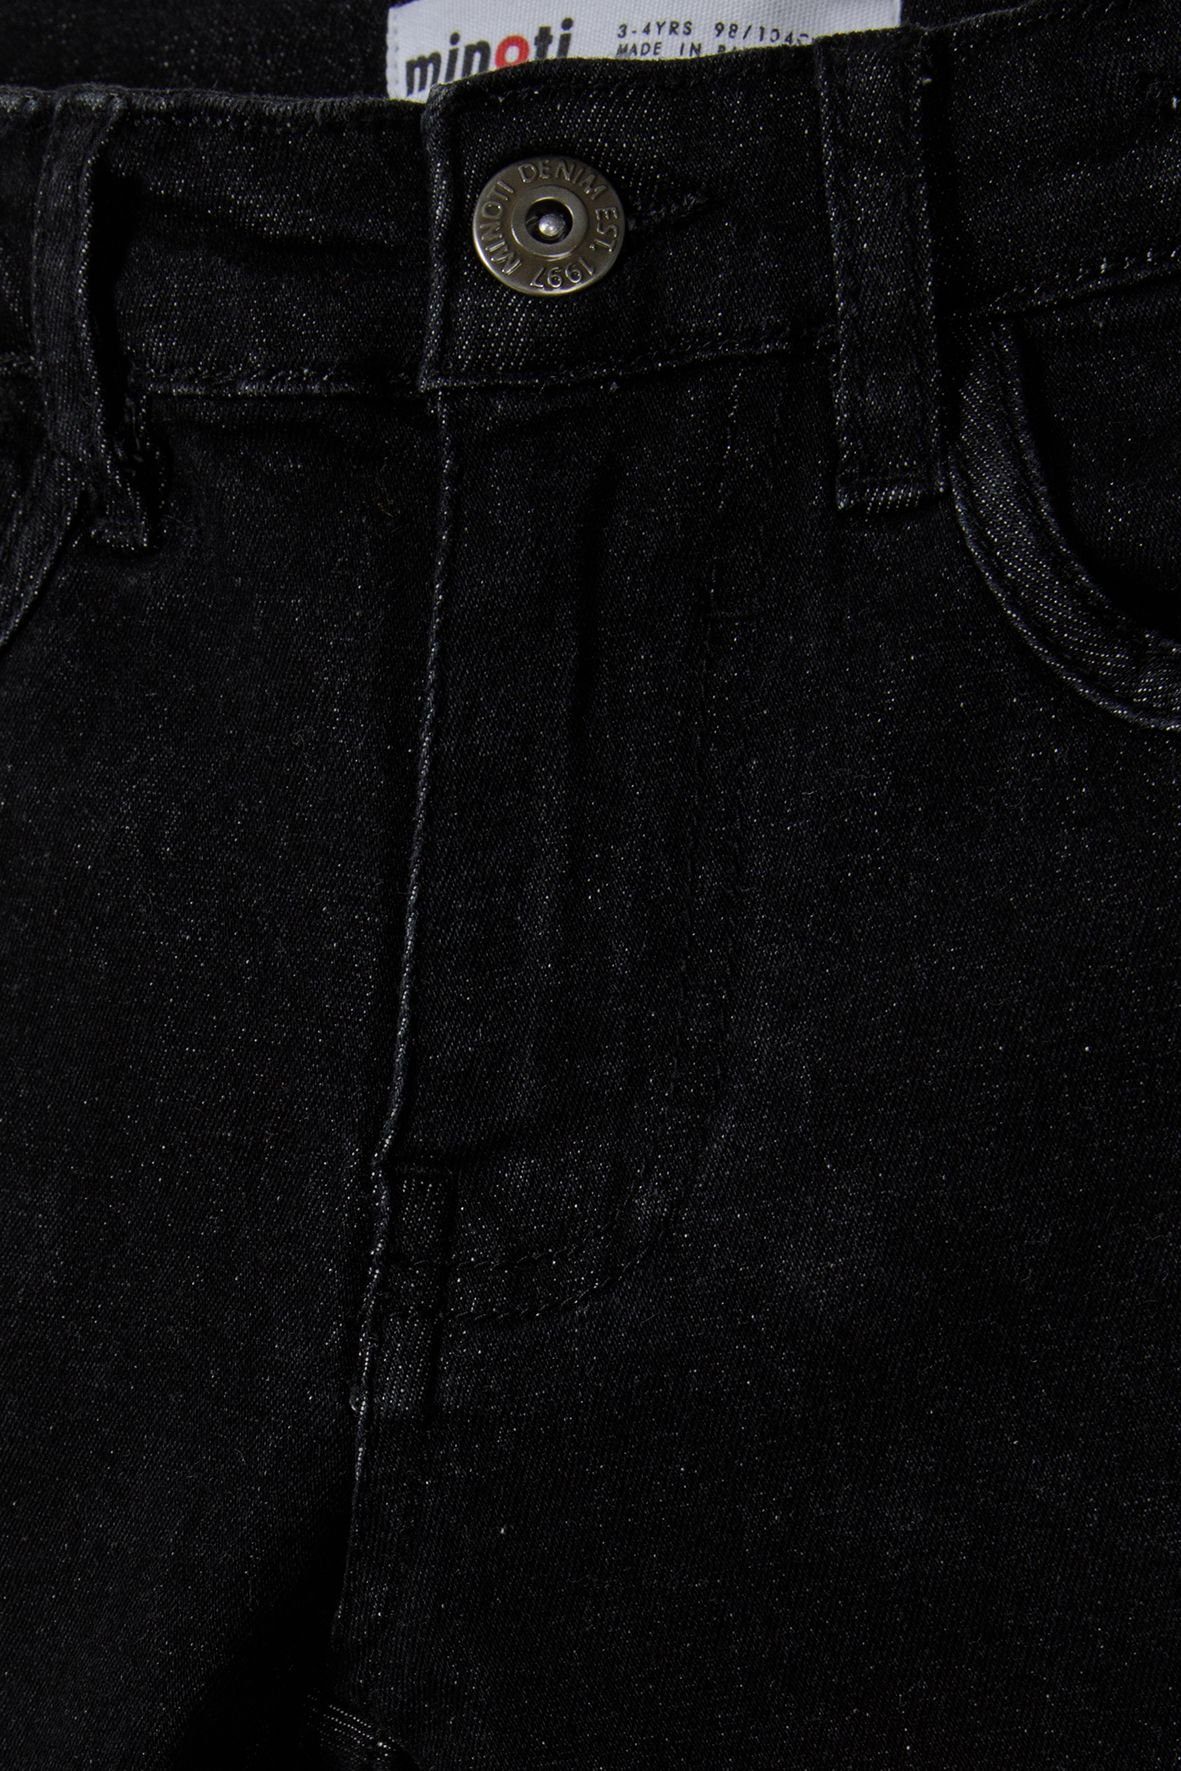 Bein (12m-14y) mit Slim-fit-Jeans Schwarz engem MINOTI